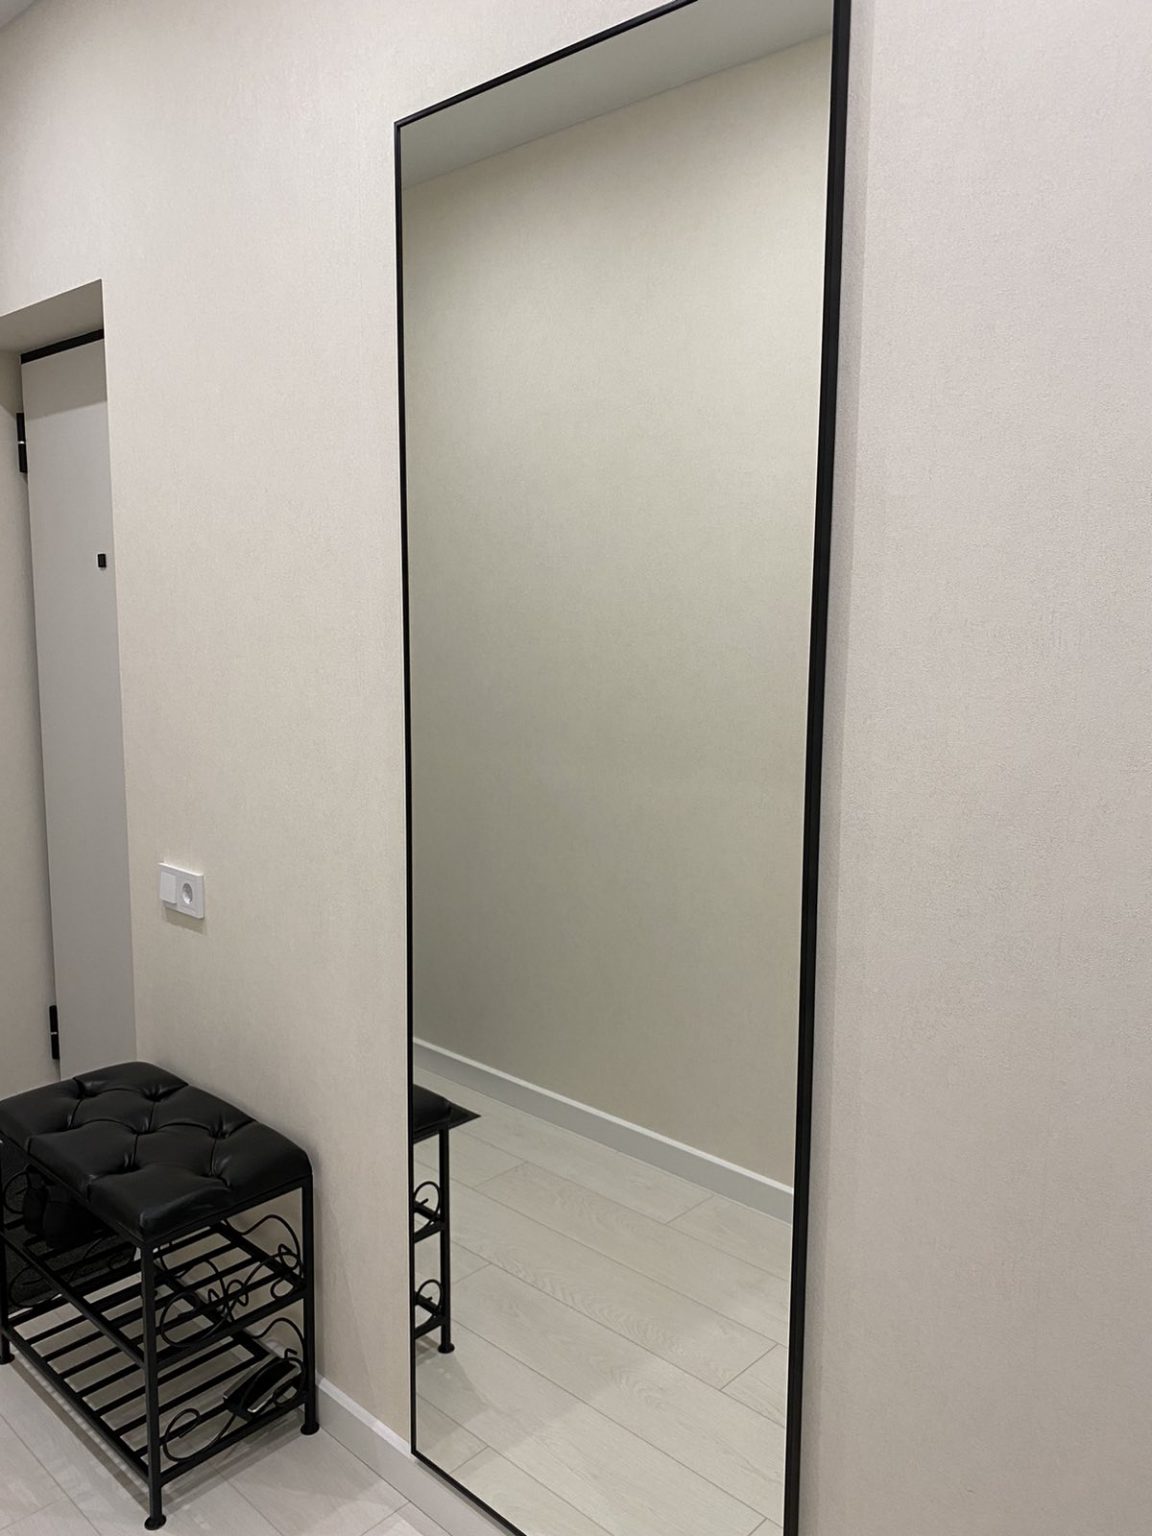 зеркало в чёрной раме на стену